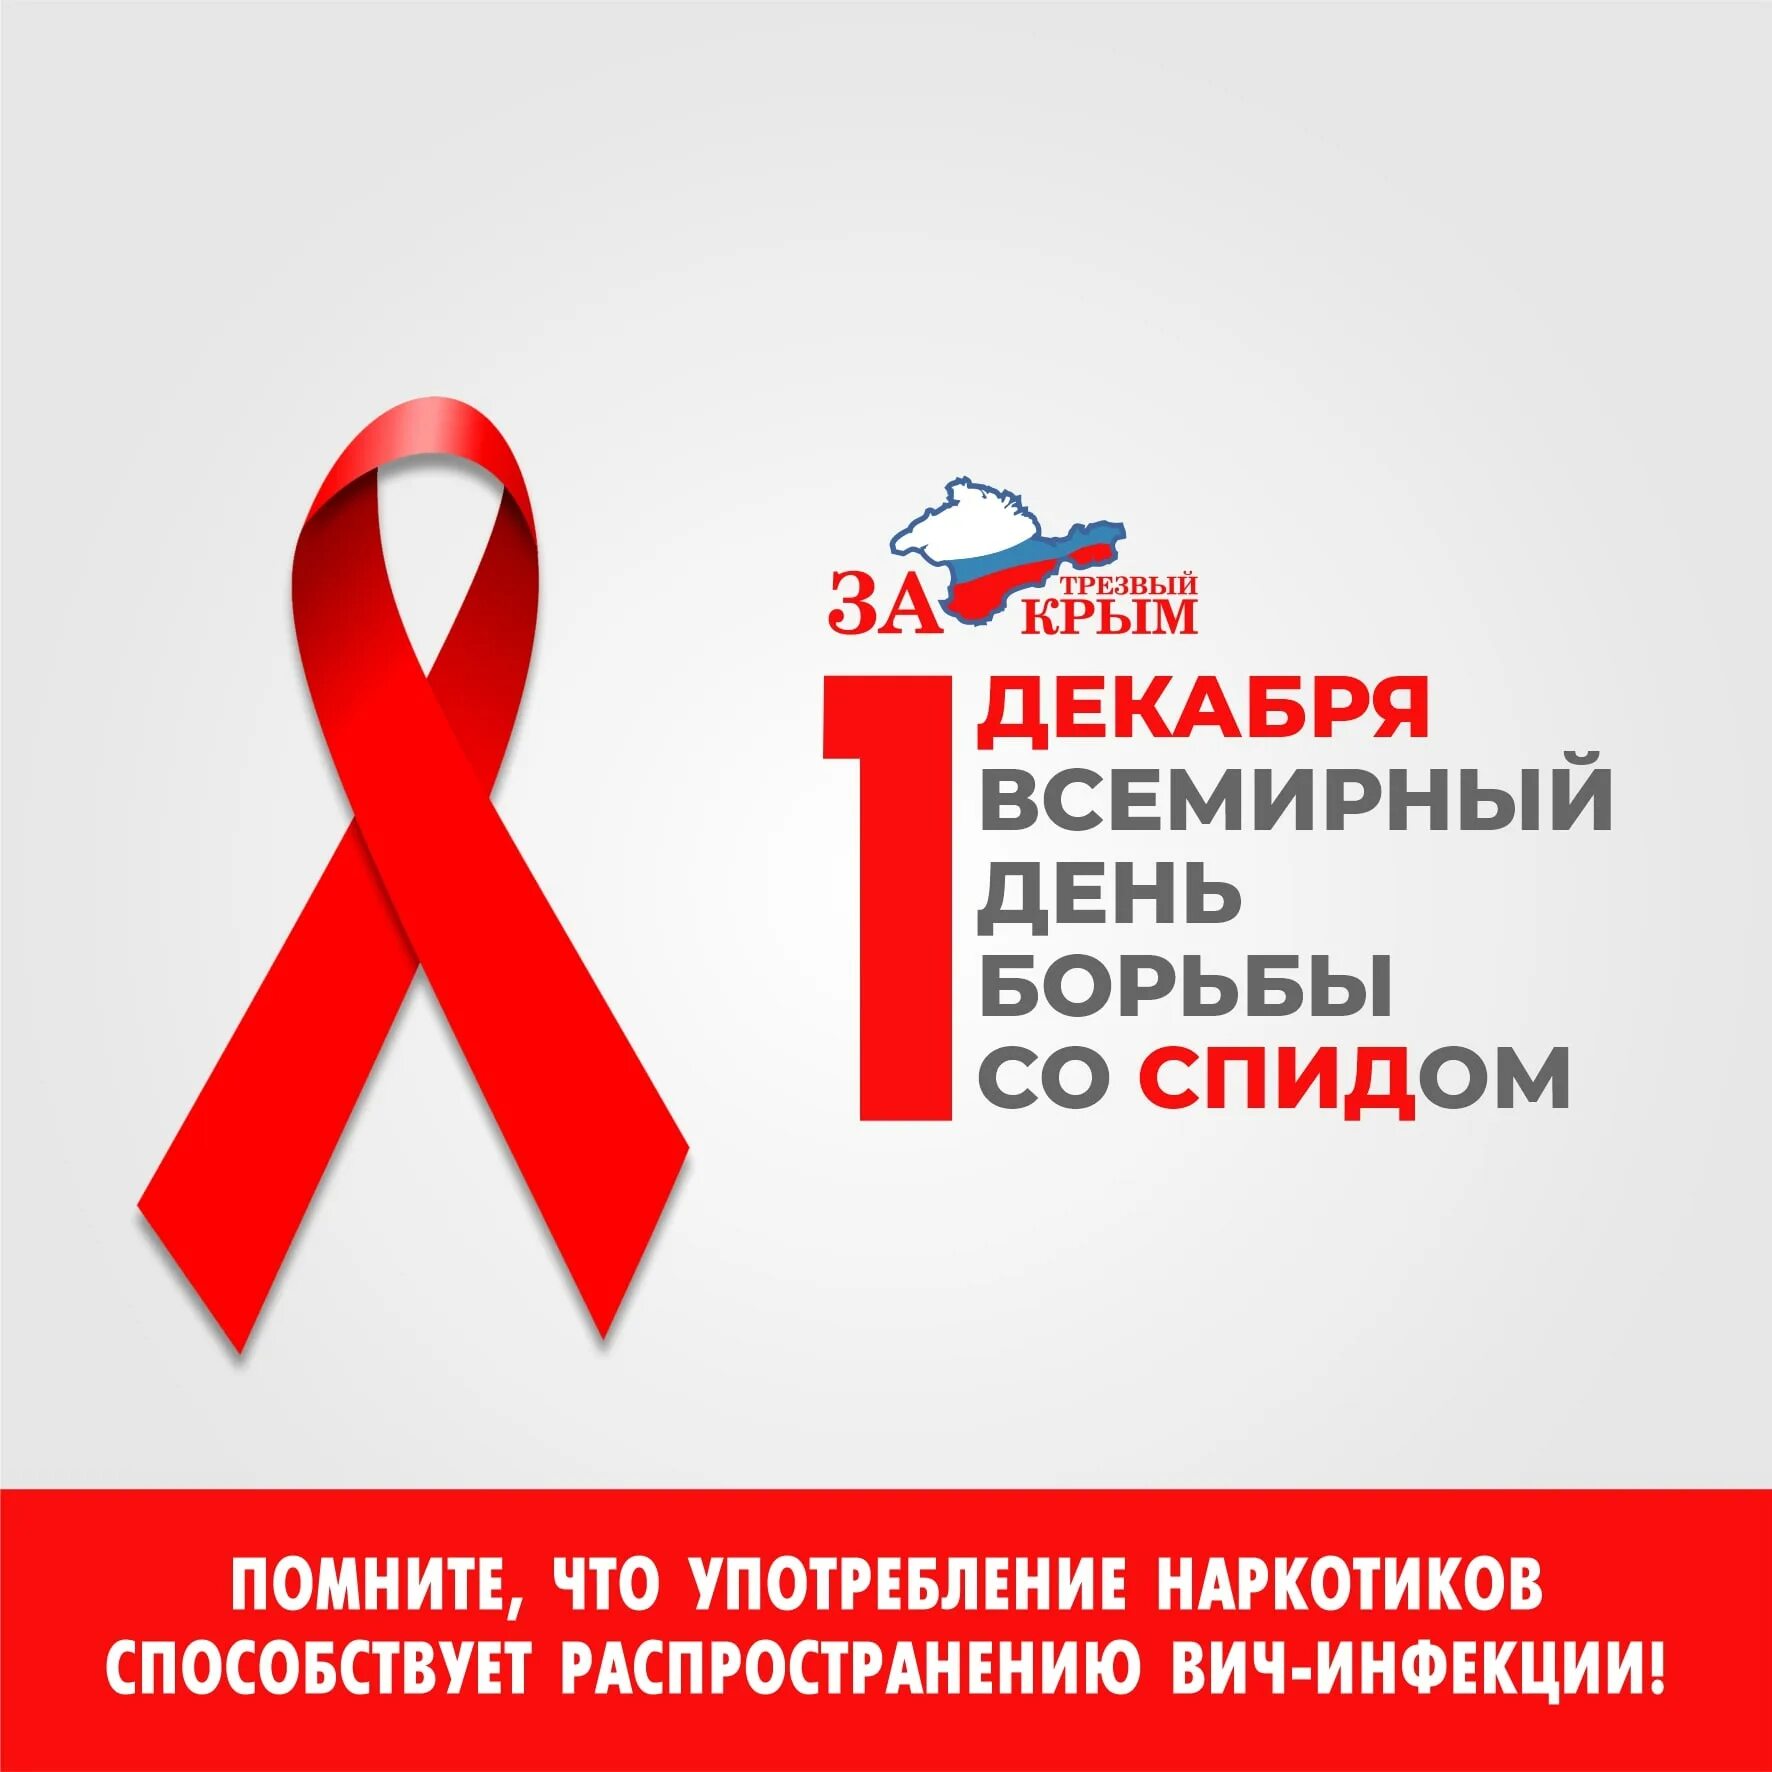 Всемирный день со спидом. 1 Декабря Всемирный день борьбы со СПИДОМ.